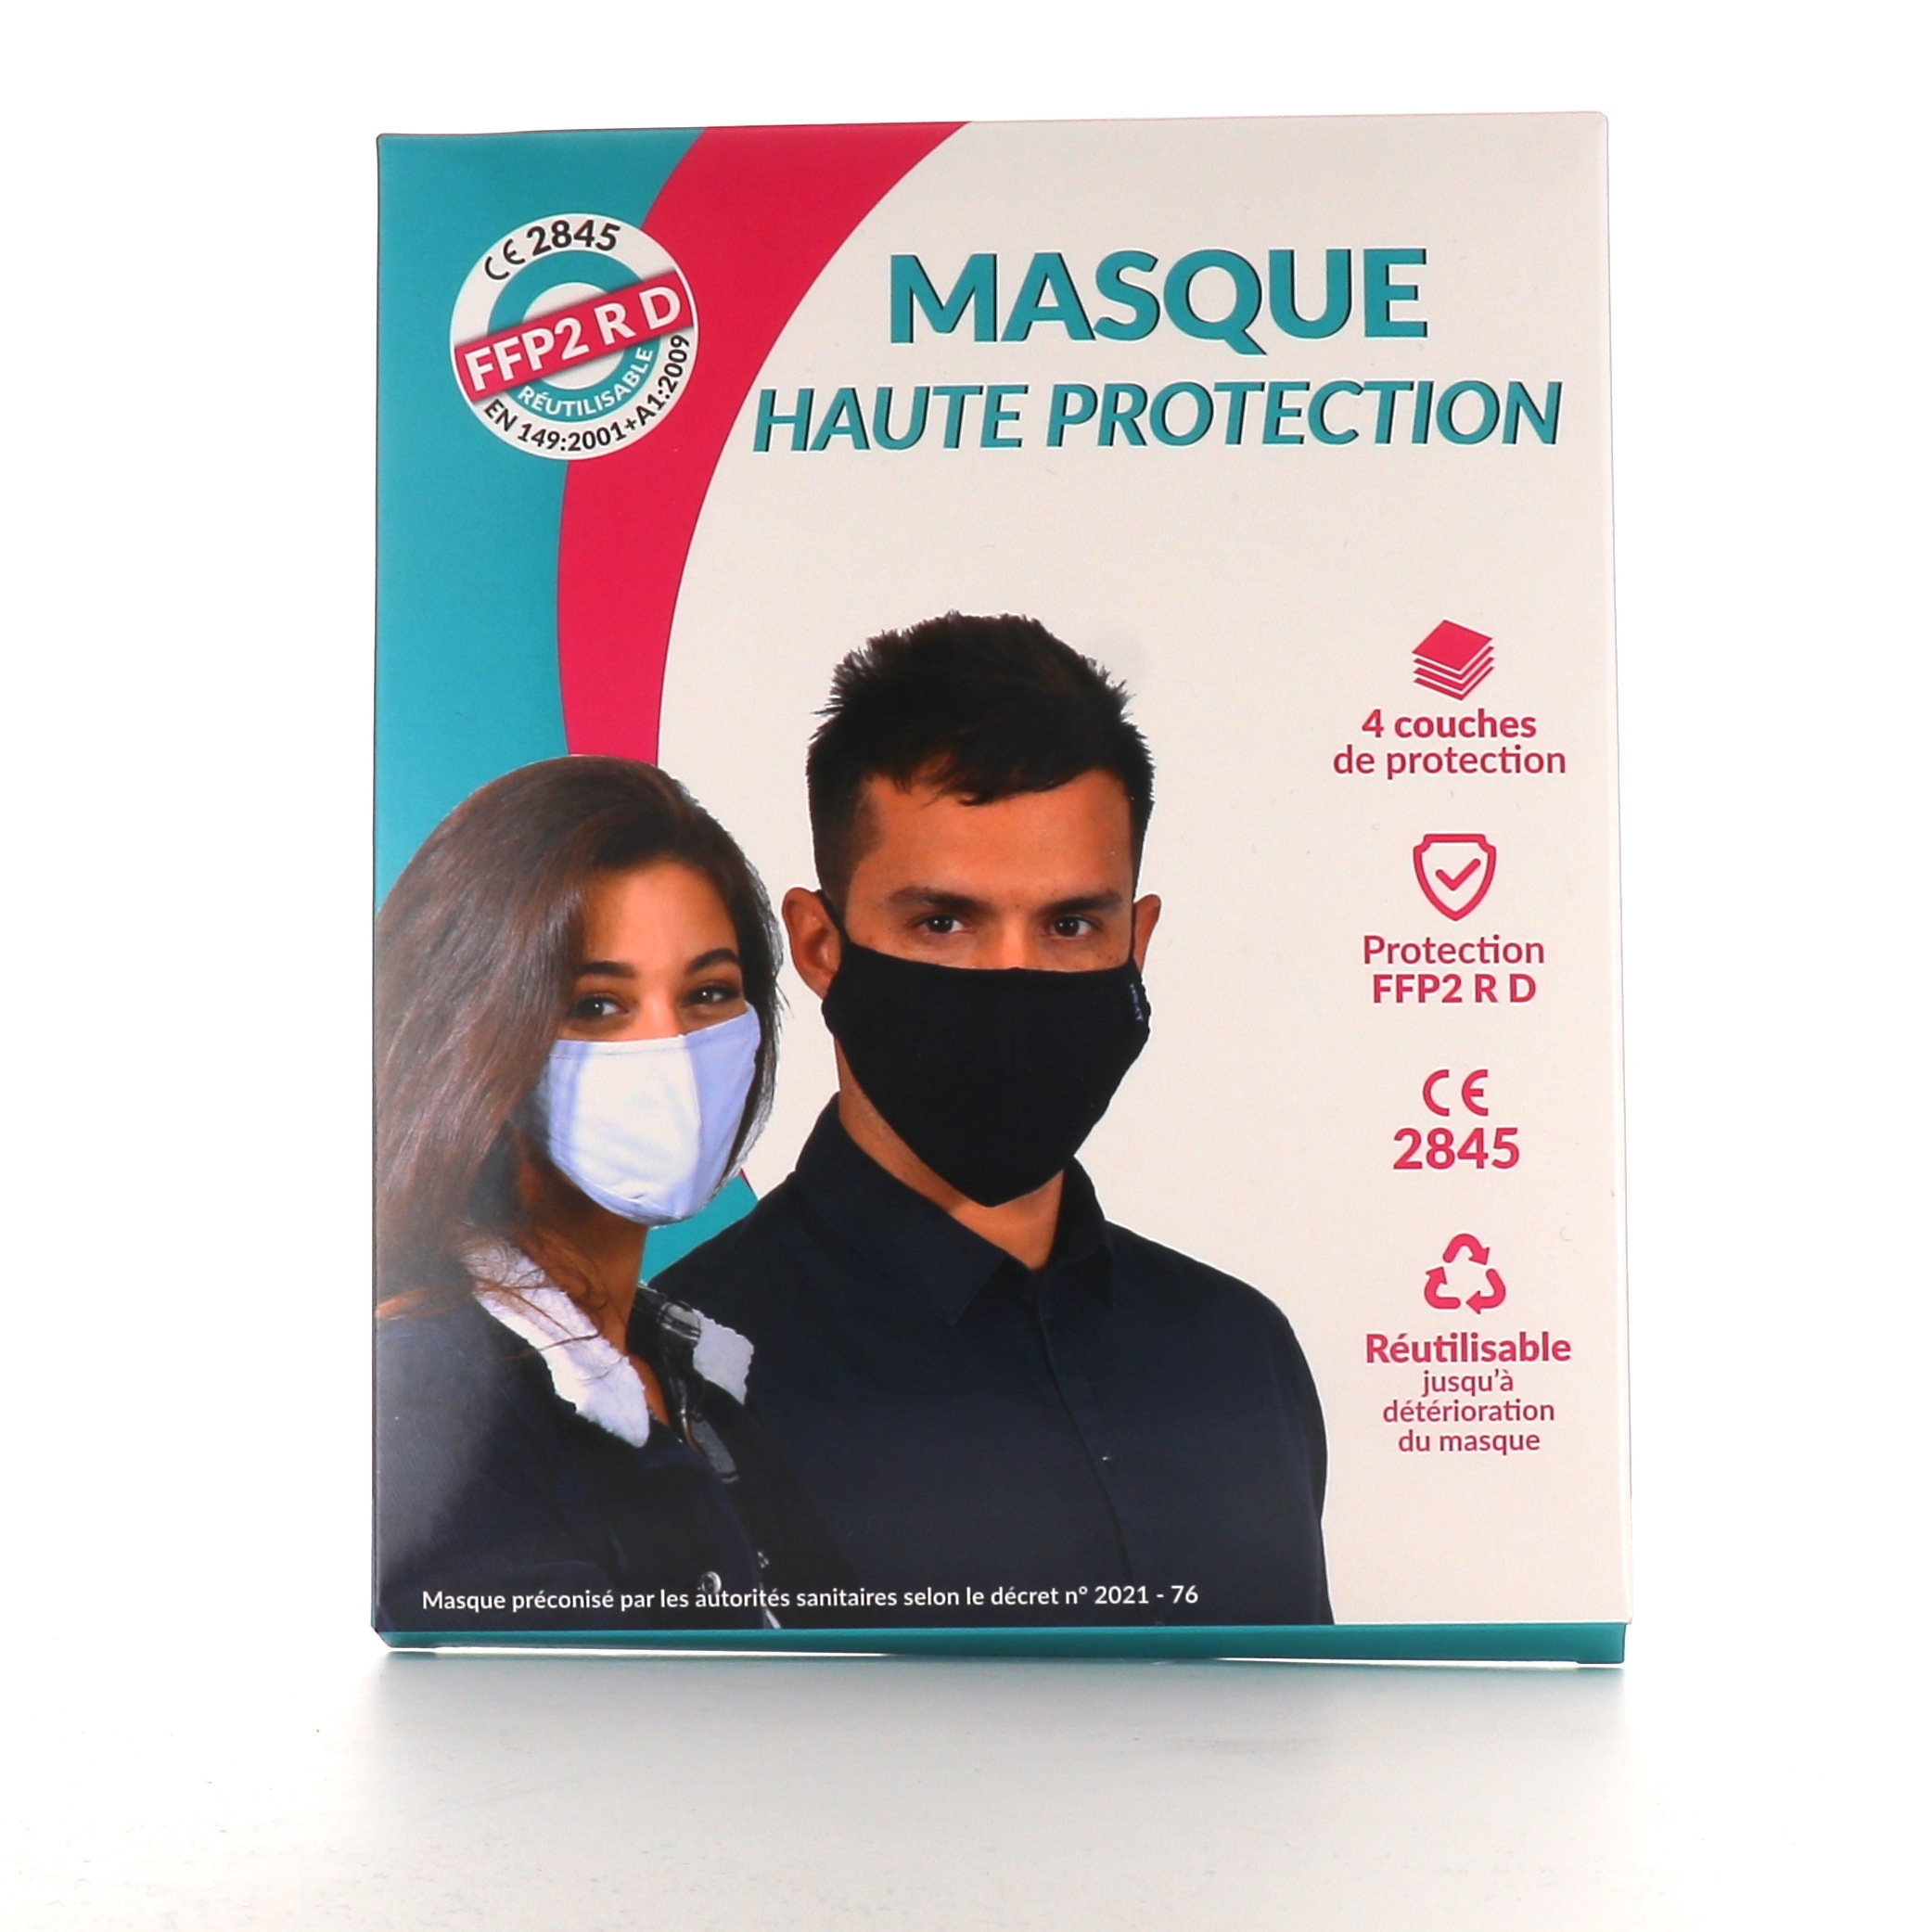 Achetez vos masques FFP2 à haute efficacité pour vous protéger des